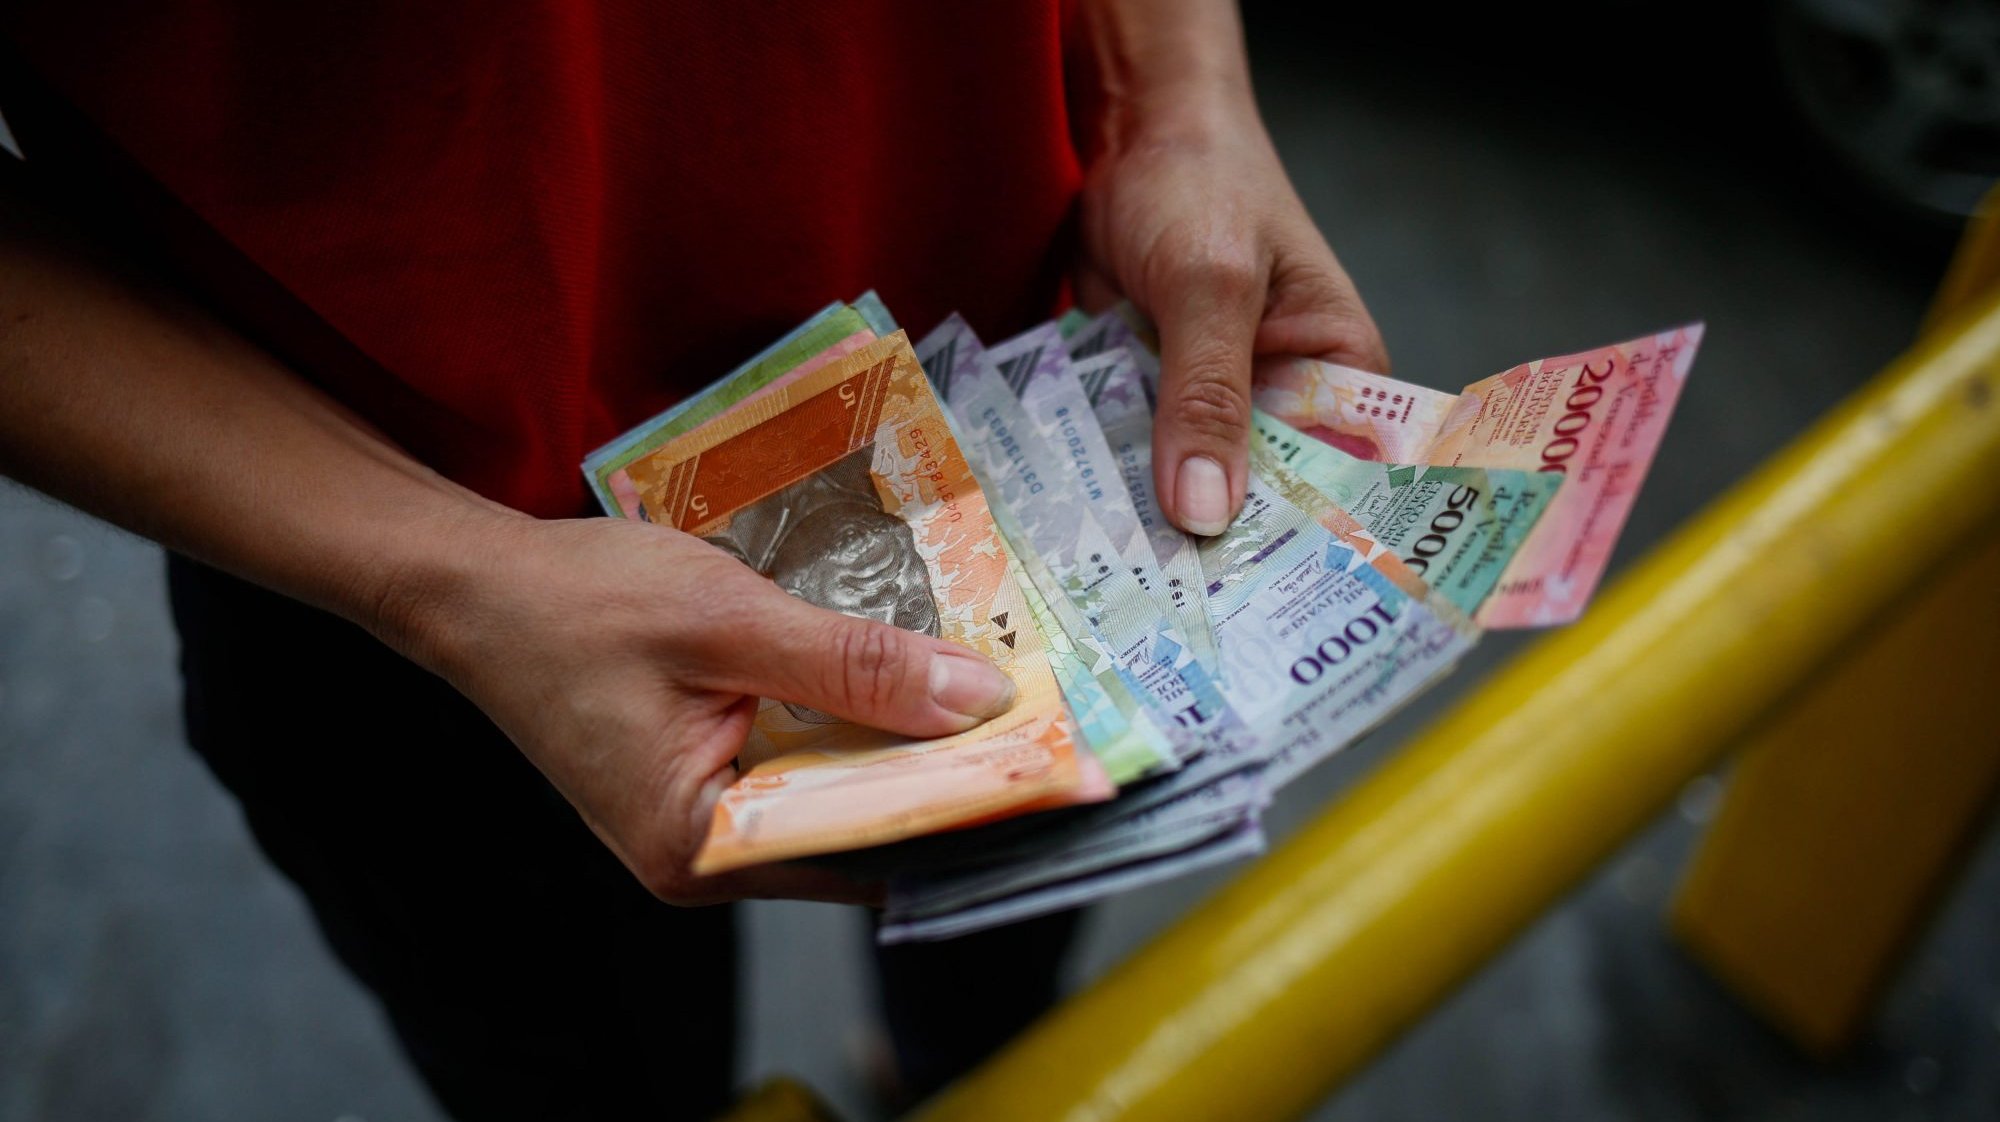 Recentemente, o governo venezuelano colocou em circulação notas de 200.000, 500.000 e 1.000.000 de BsS